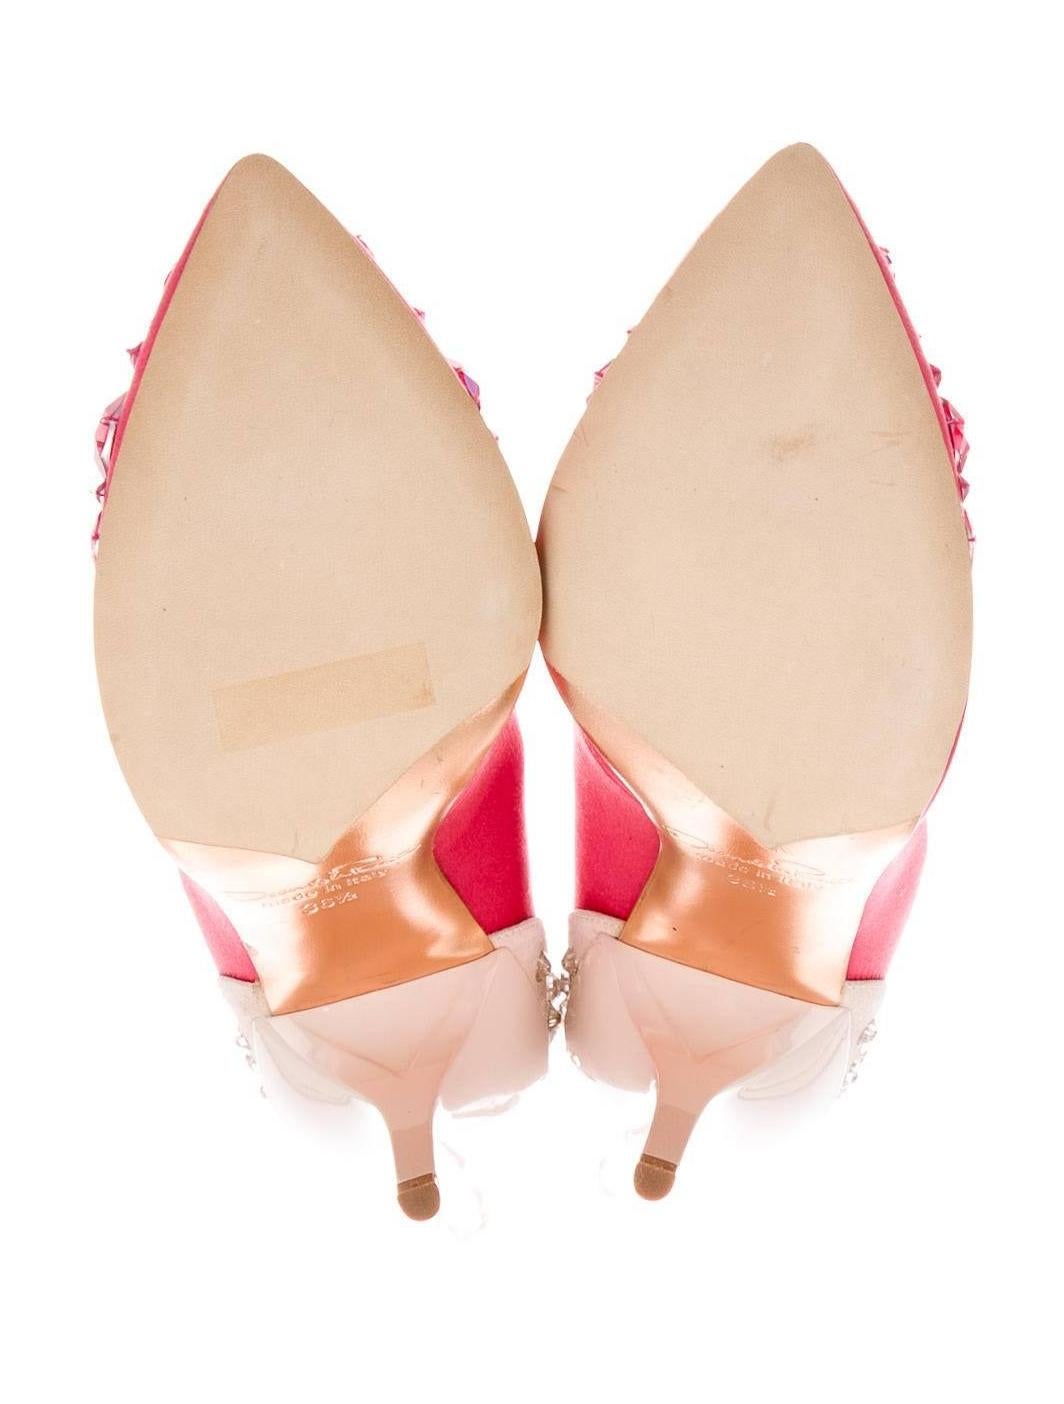 Oscar de la Renta NEW Pink Satin Suede Crystal Embellished Pumps Shoes in Box 1